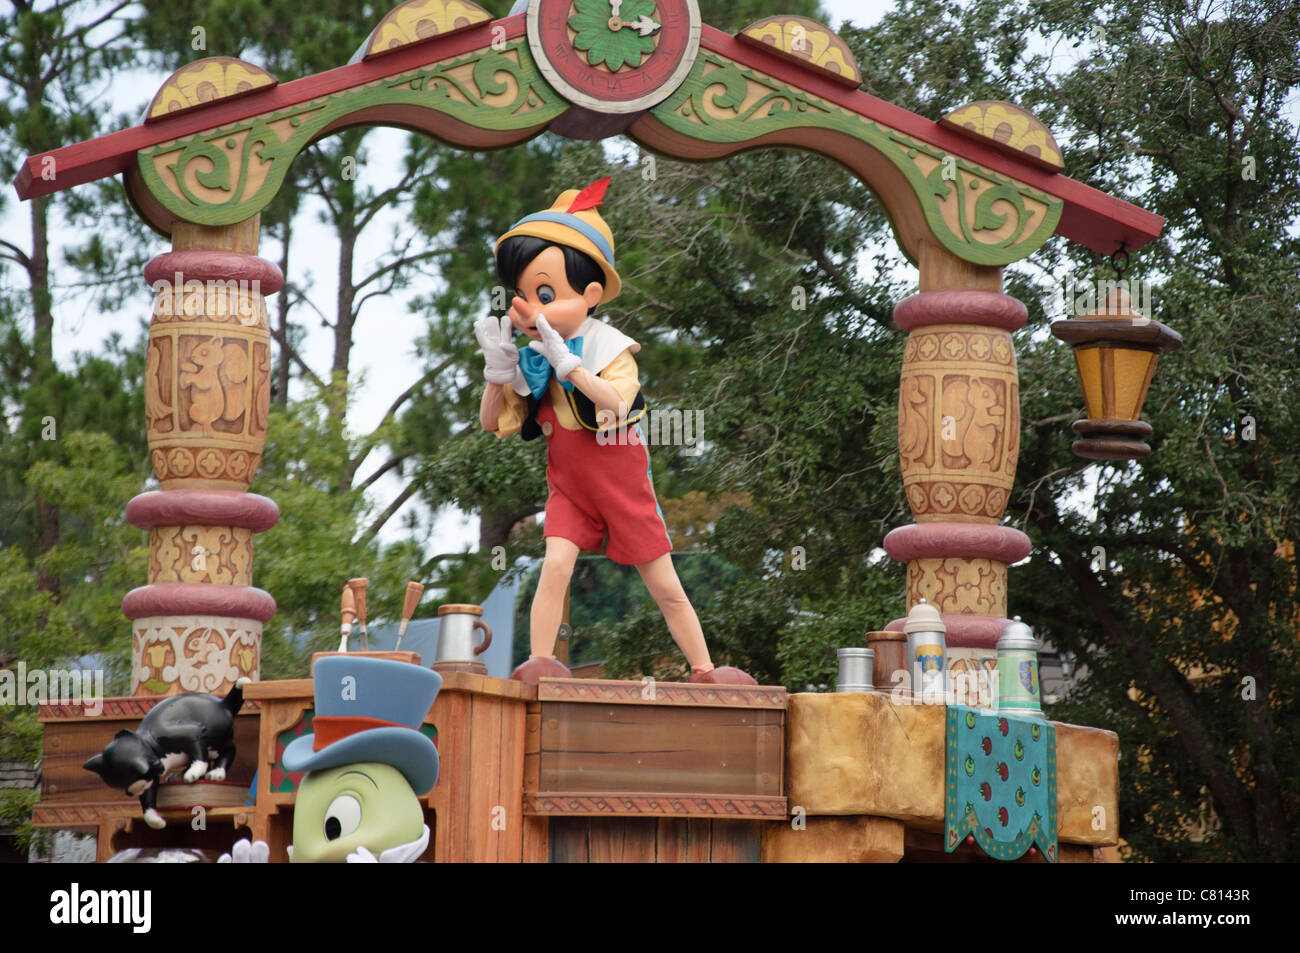 Le royaume magique célébrer un rêve viennent vrai Pinocchio parade float Banque D'Images